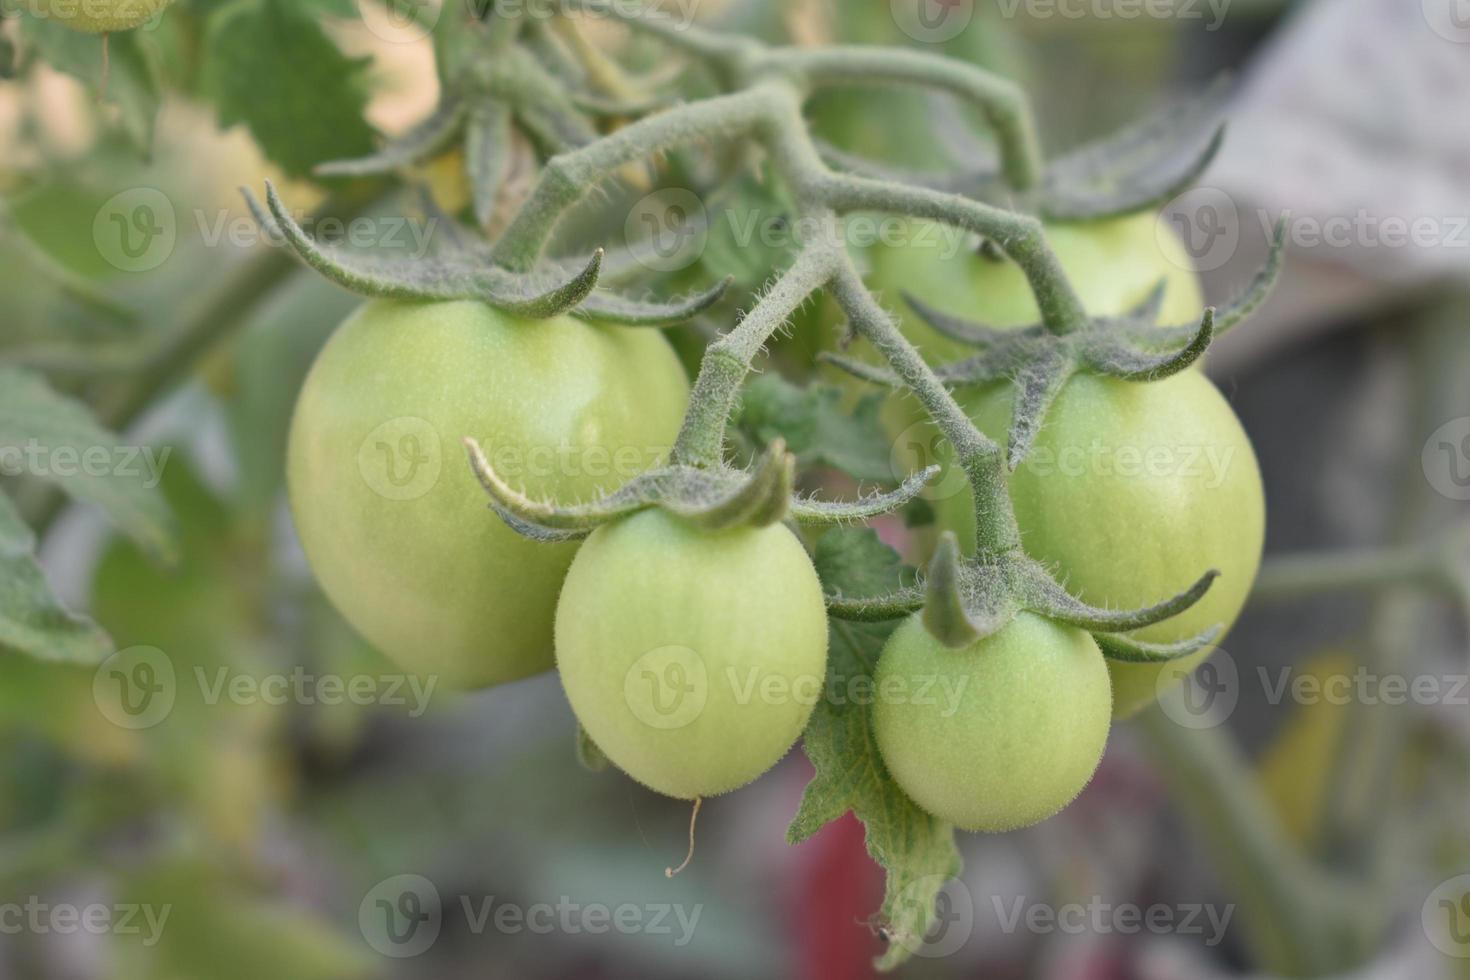 Grün Tomaten auf das Pflanze foto